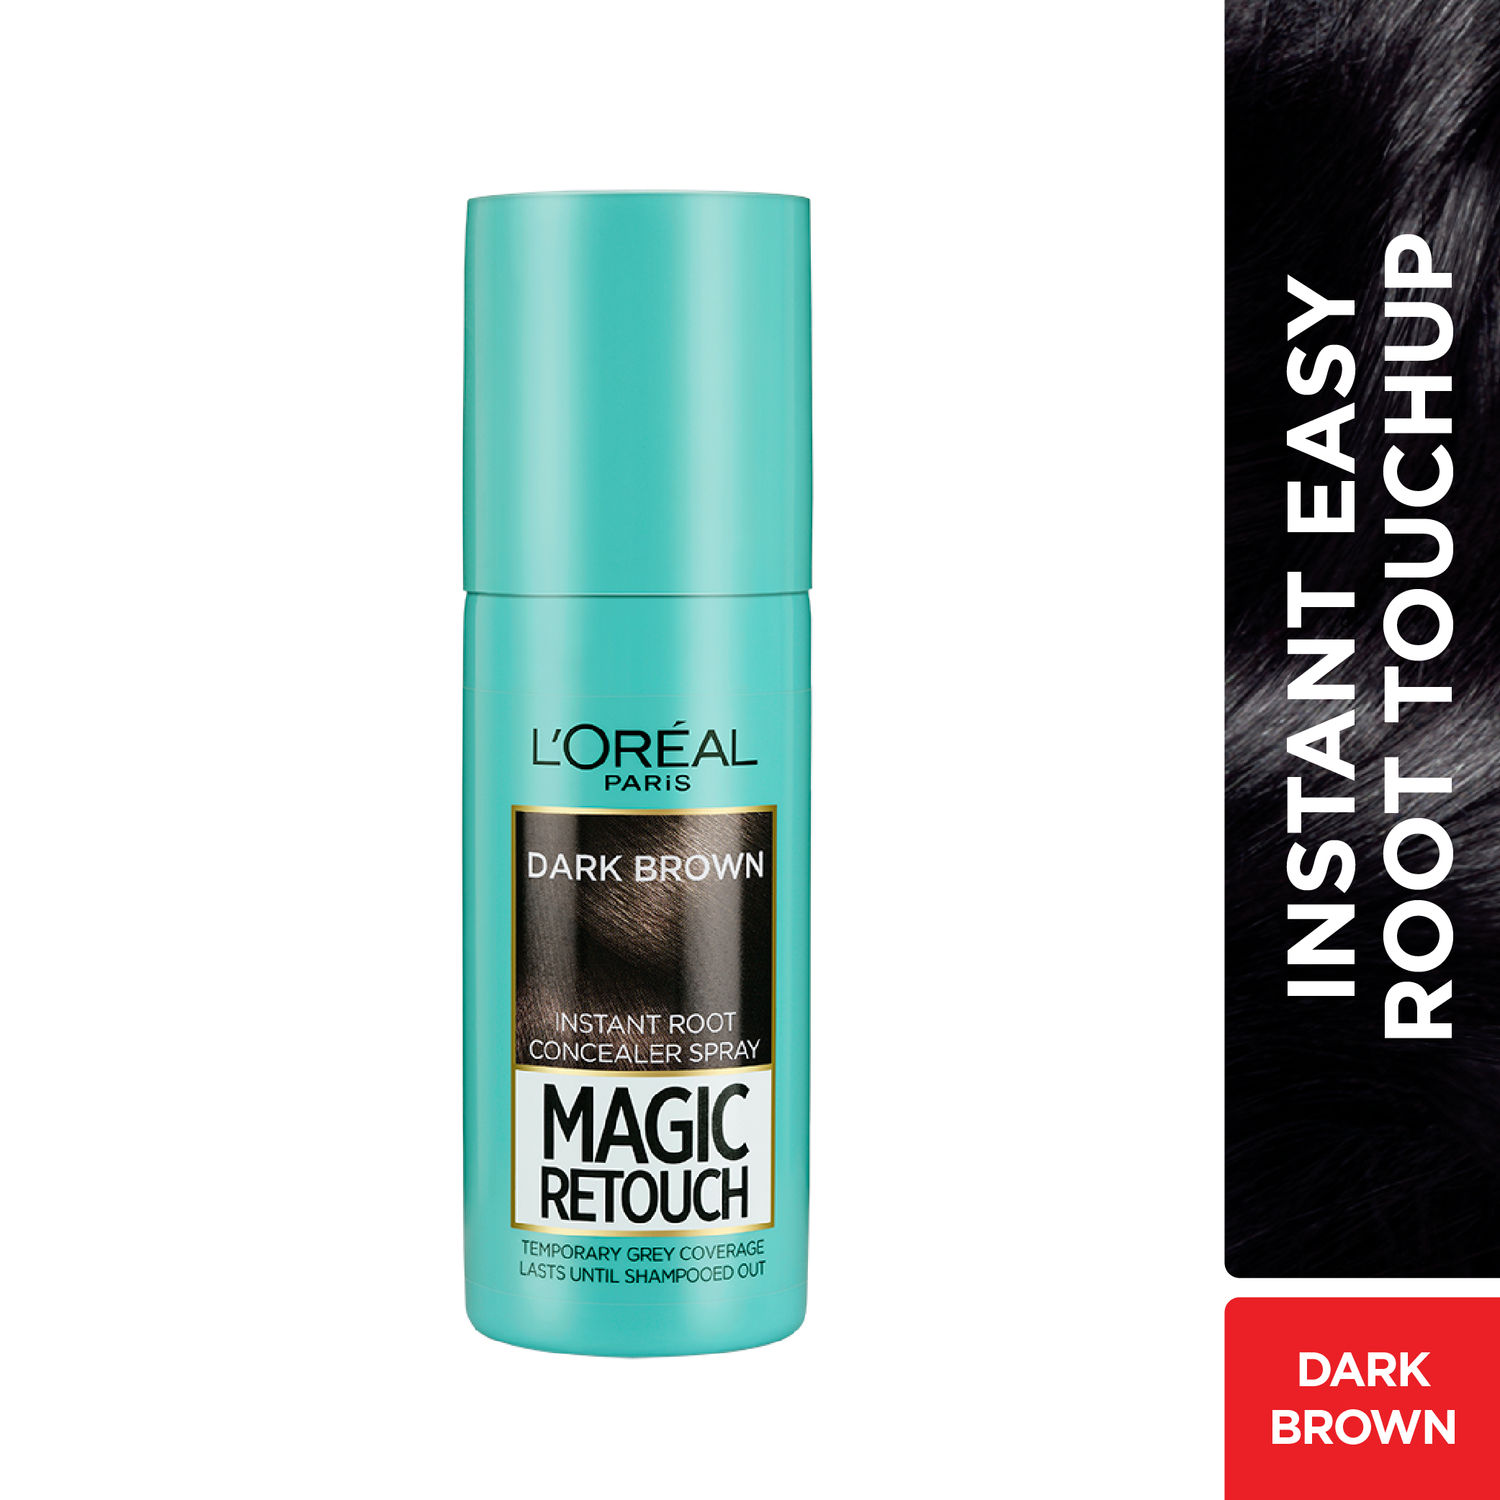 Hair Loss Loreal Magic Root Cover Up Review  by Uhapi Beauty  Medium